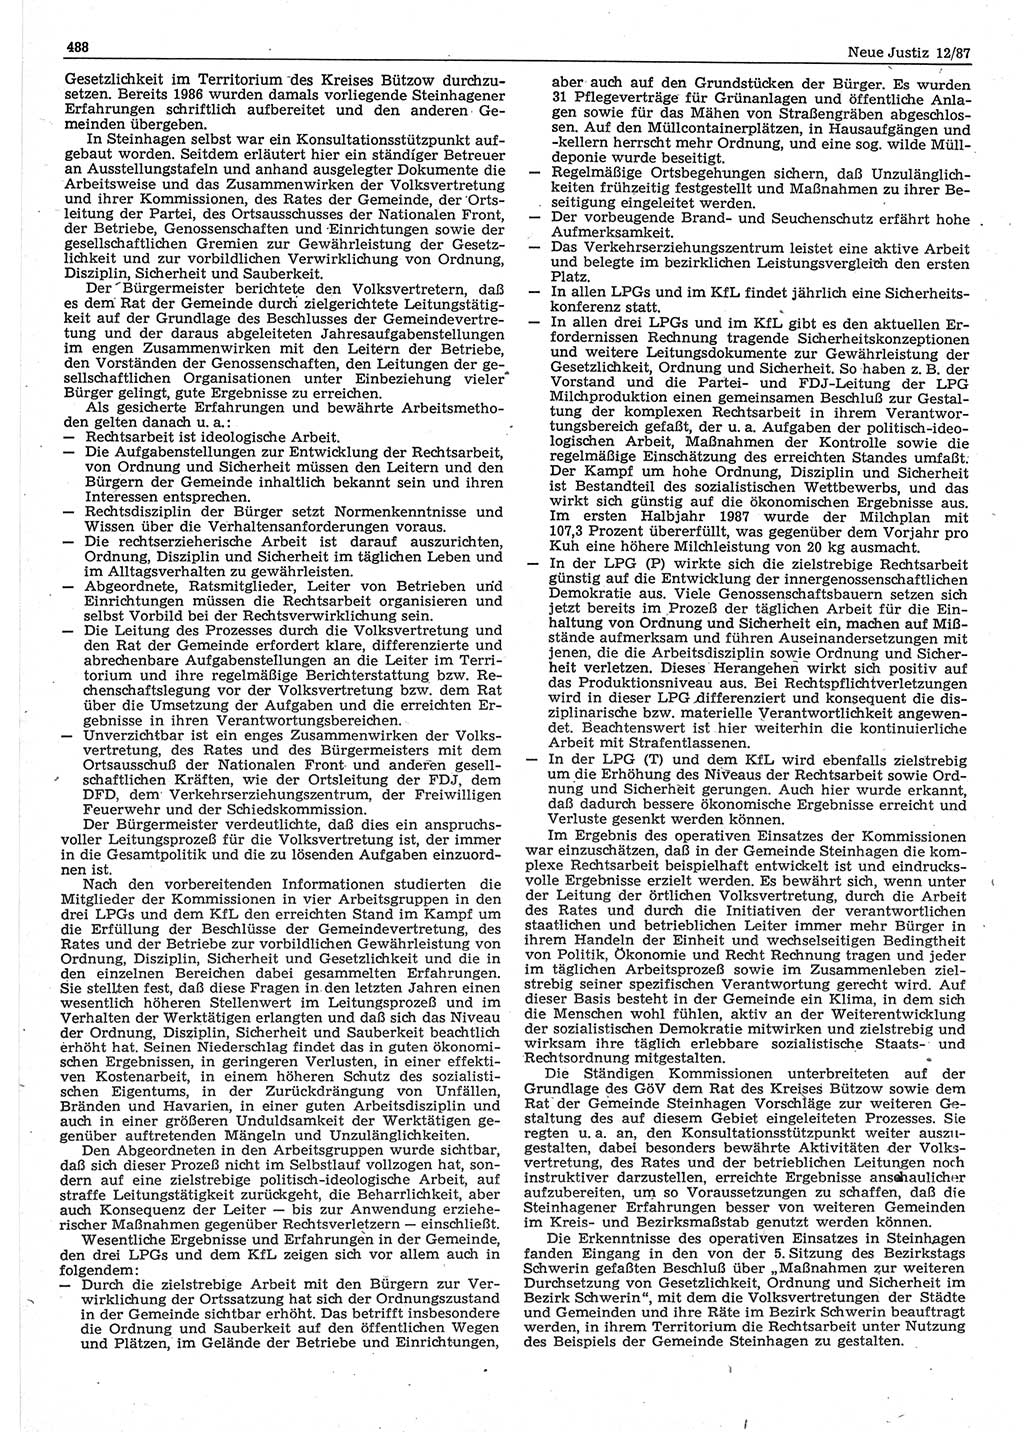 Neue Justiz (NJ), Zeitschrift für sozialistisches Recht und Gesetzlichkeit [Deutsche Demokratische Republik (DDR)], 41. Jahrgang 1987, Seite 488 (NJ DDR 1987, S. 488)